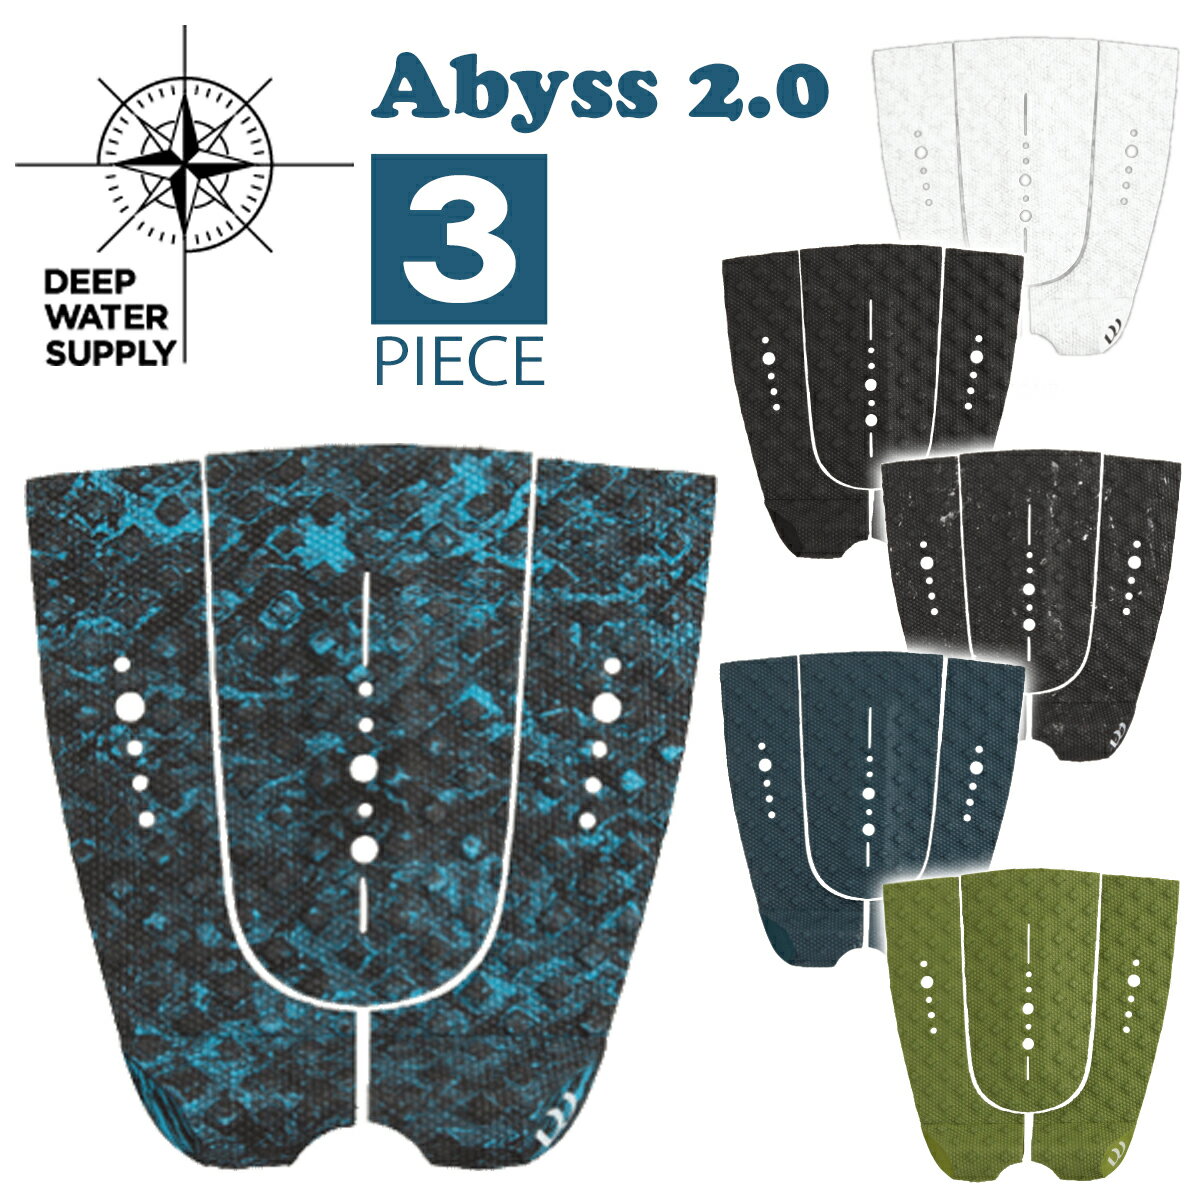 DEEP WATER SUPPLY ディープウォーターサプライ デッキパッド Abyss 2.0 アビス 3ピース デッキパッチ ..